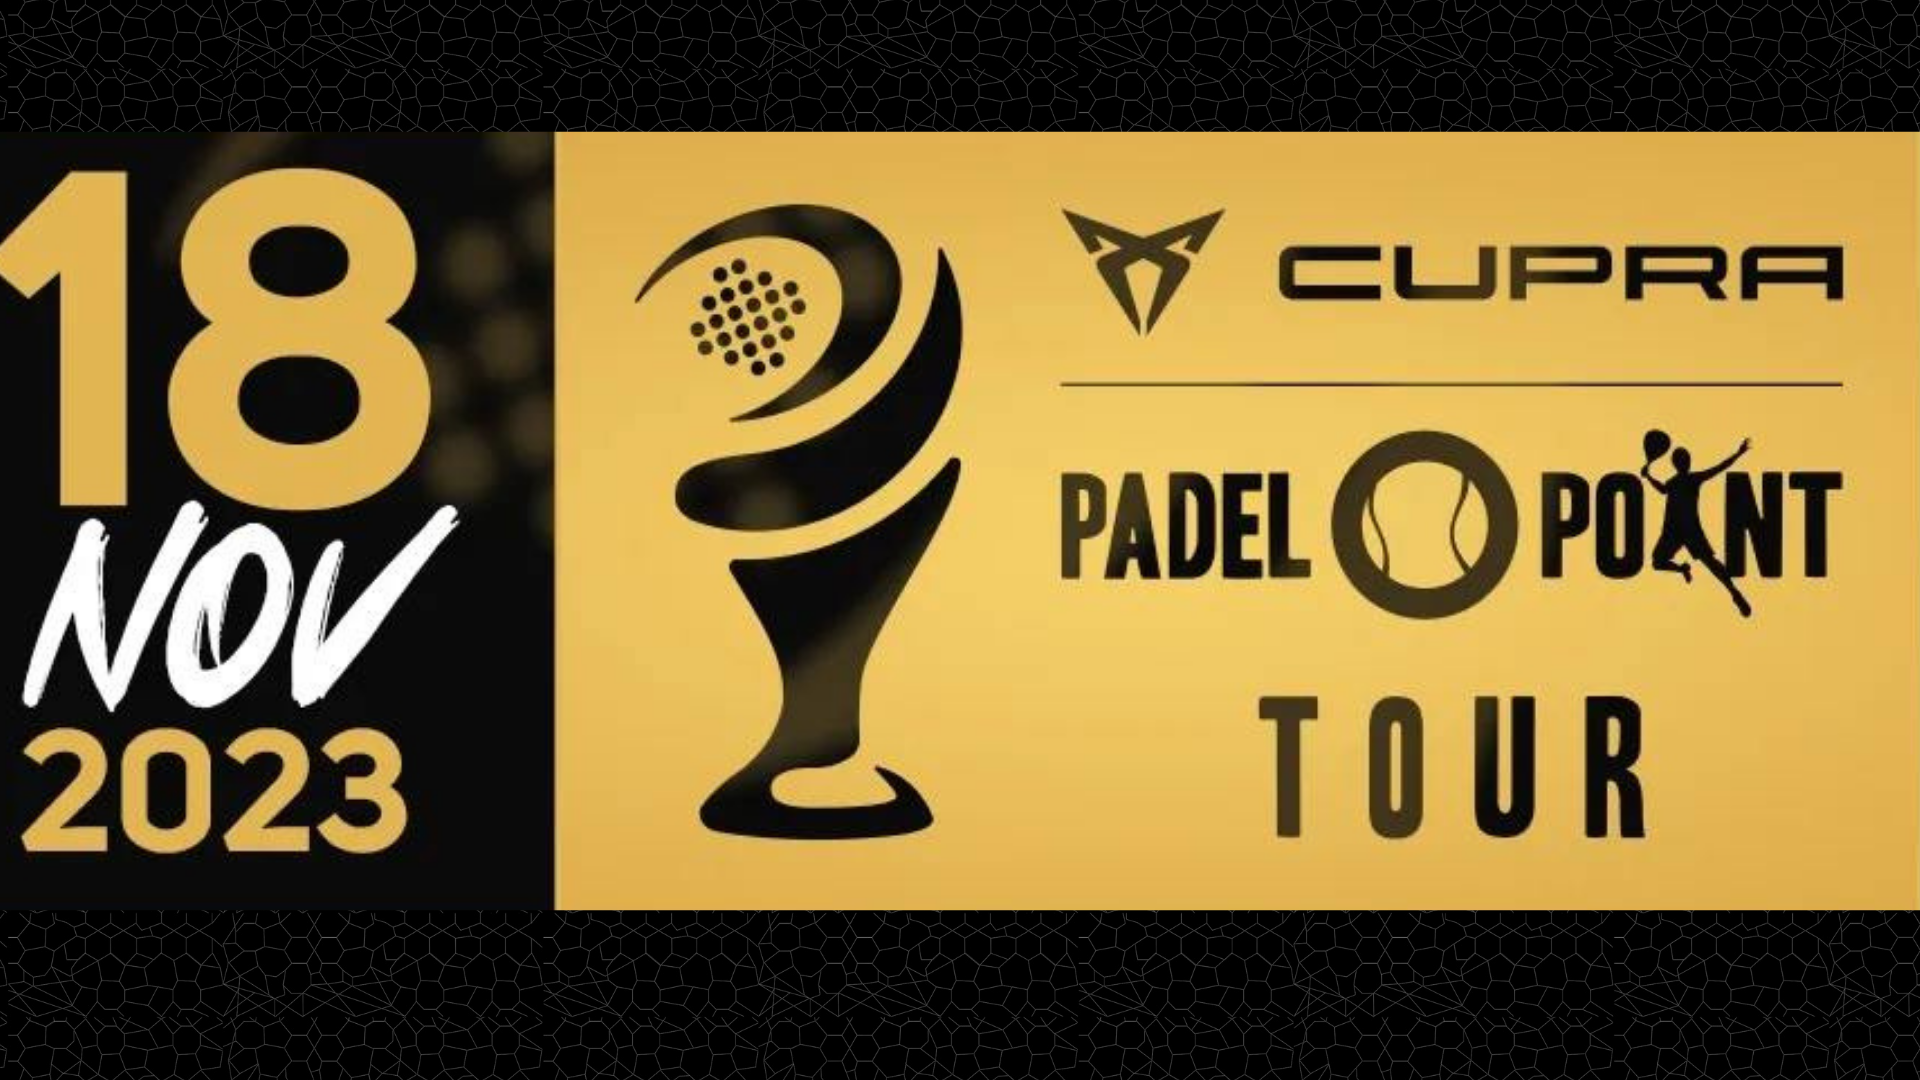 Cupra Padel-Point Tour : el Master Final se acerca